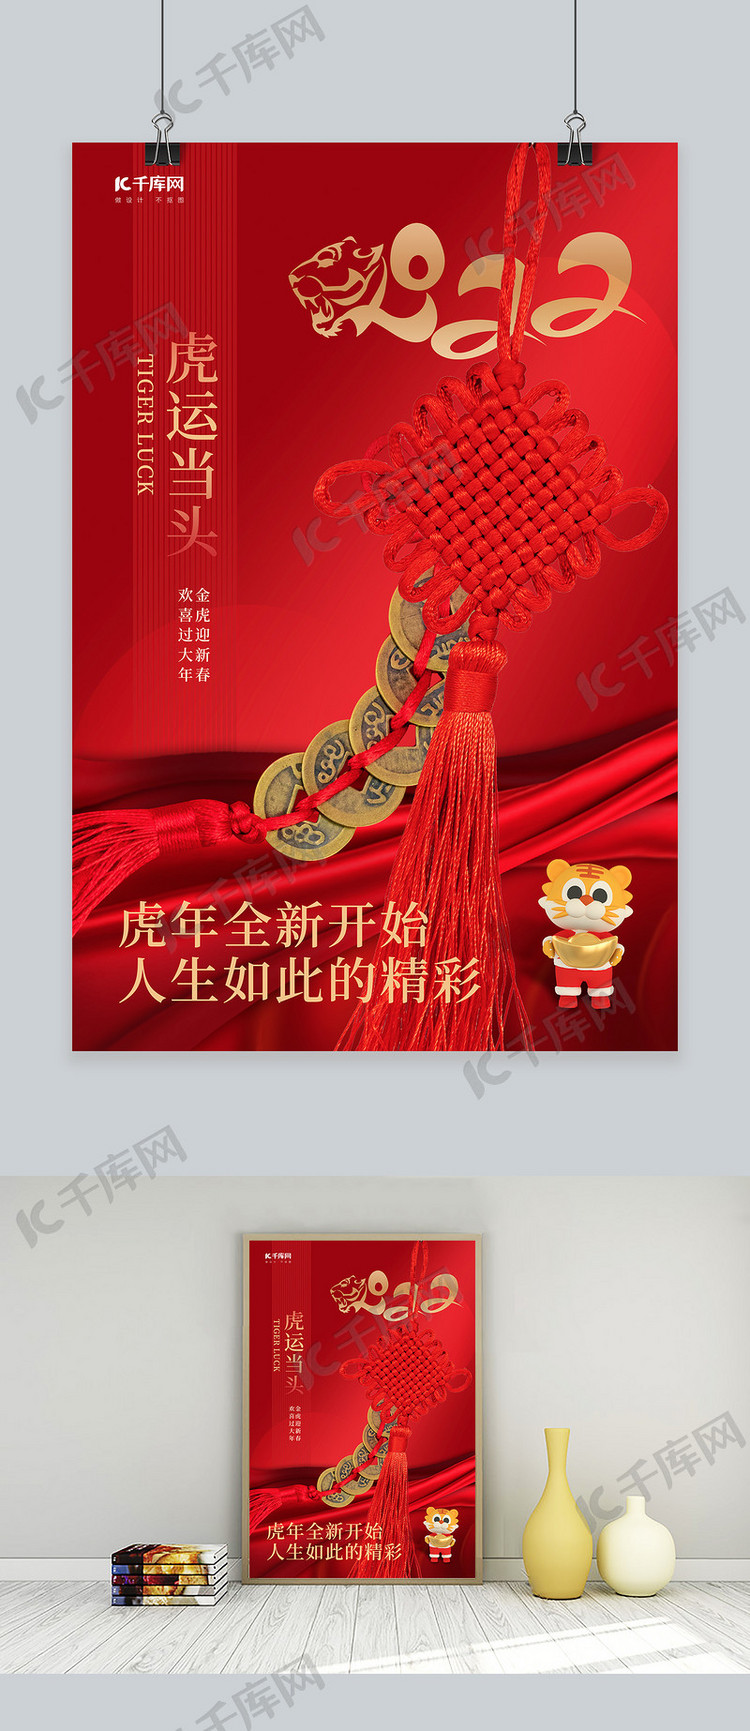 2022虎年套图中国节红色喜庆海报